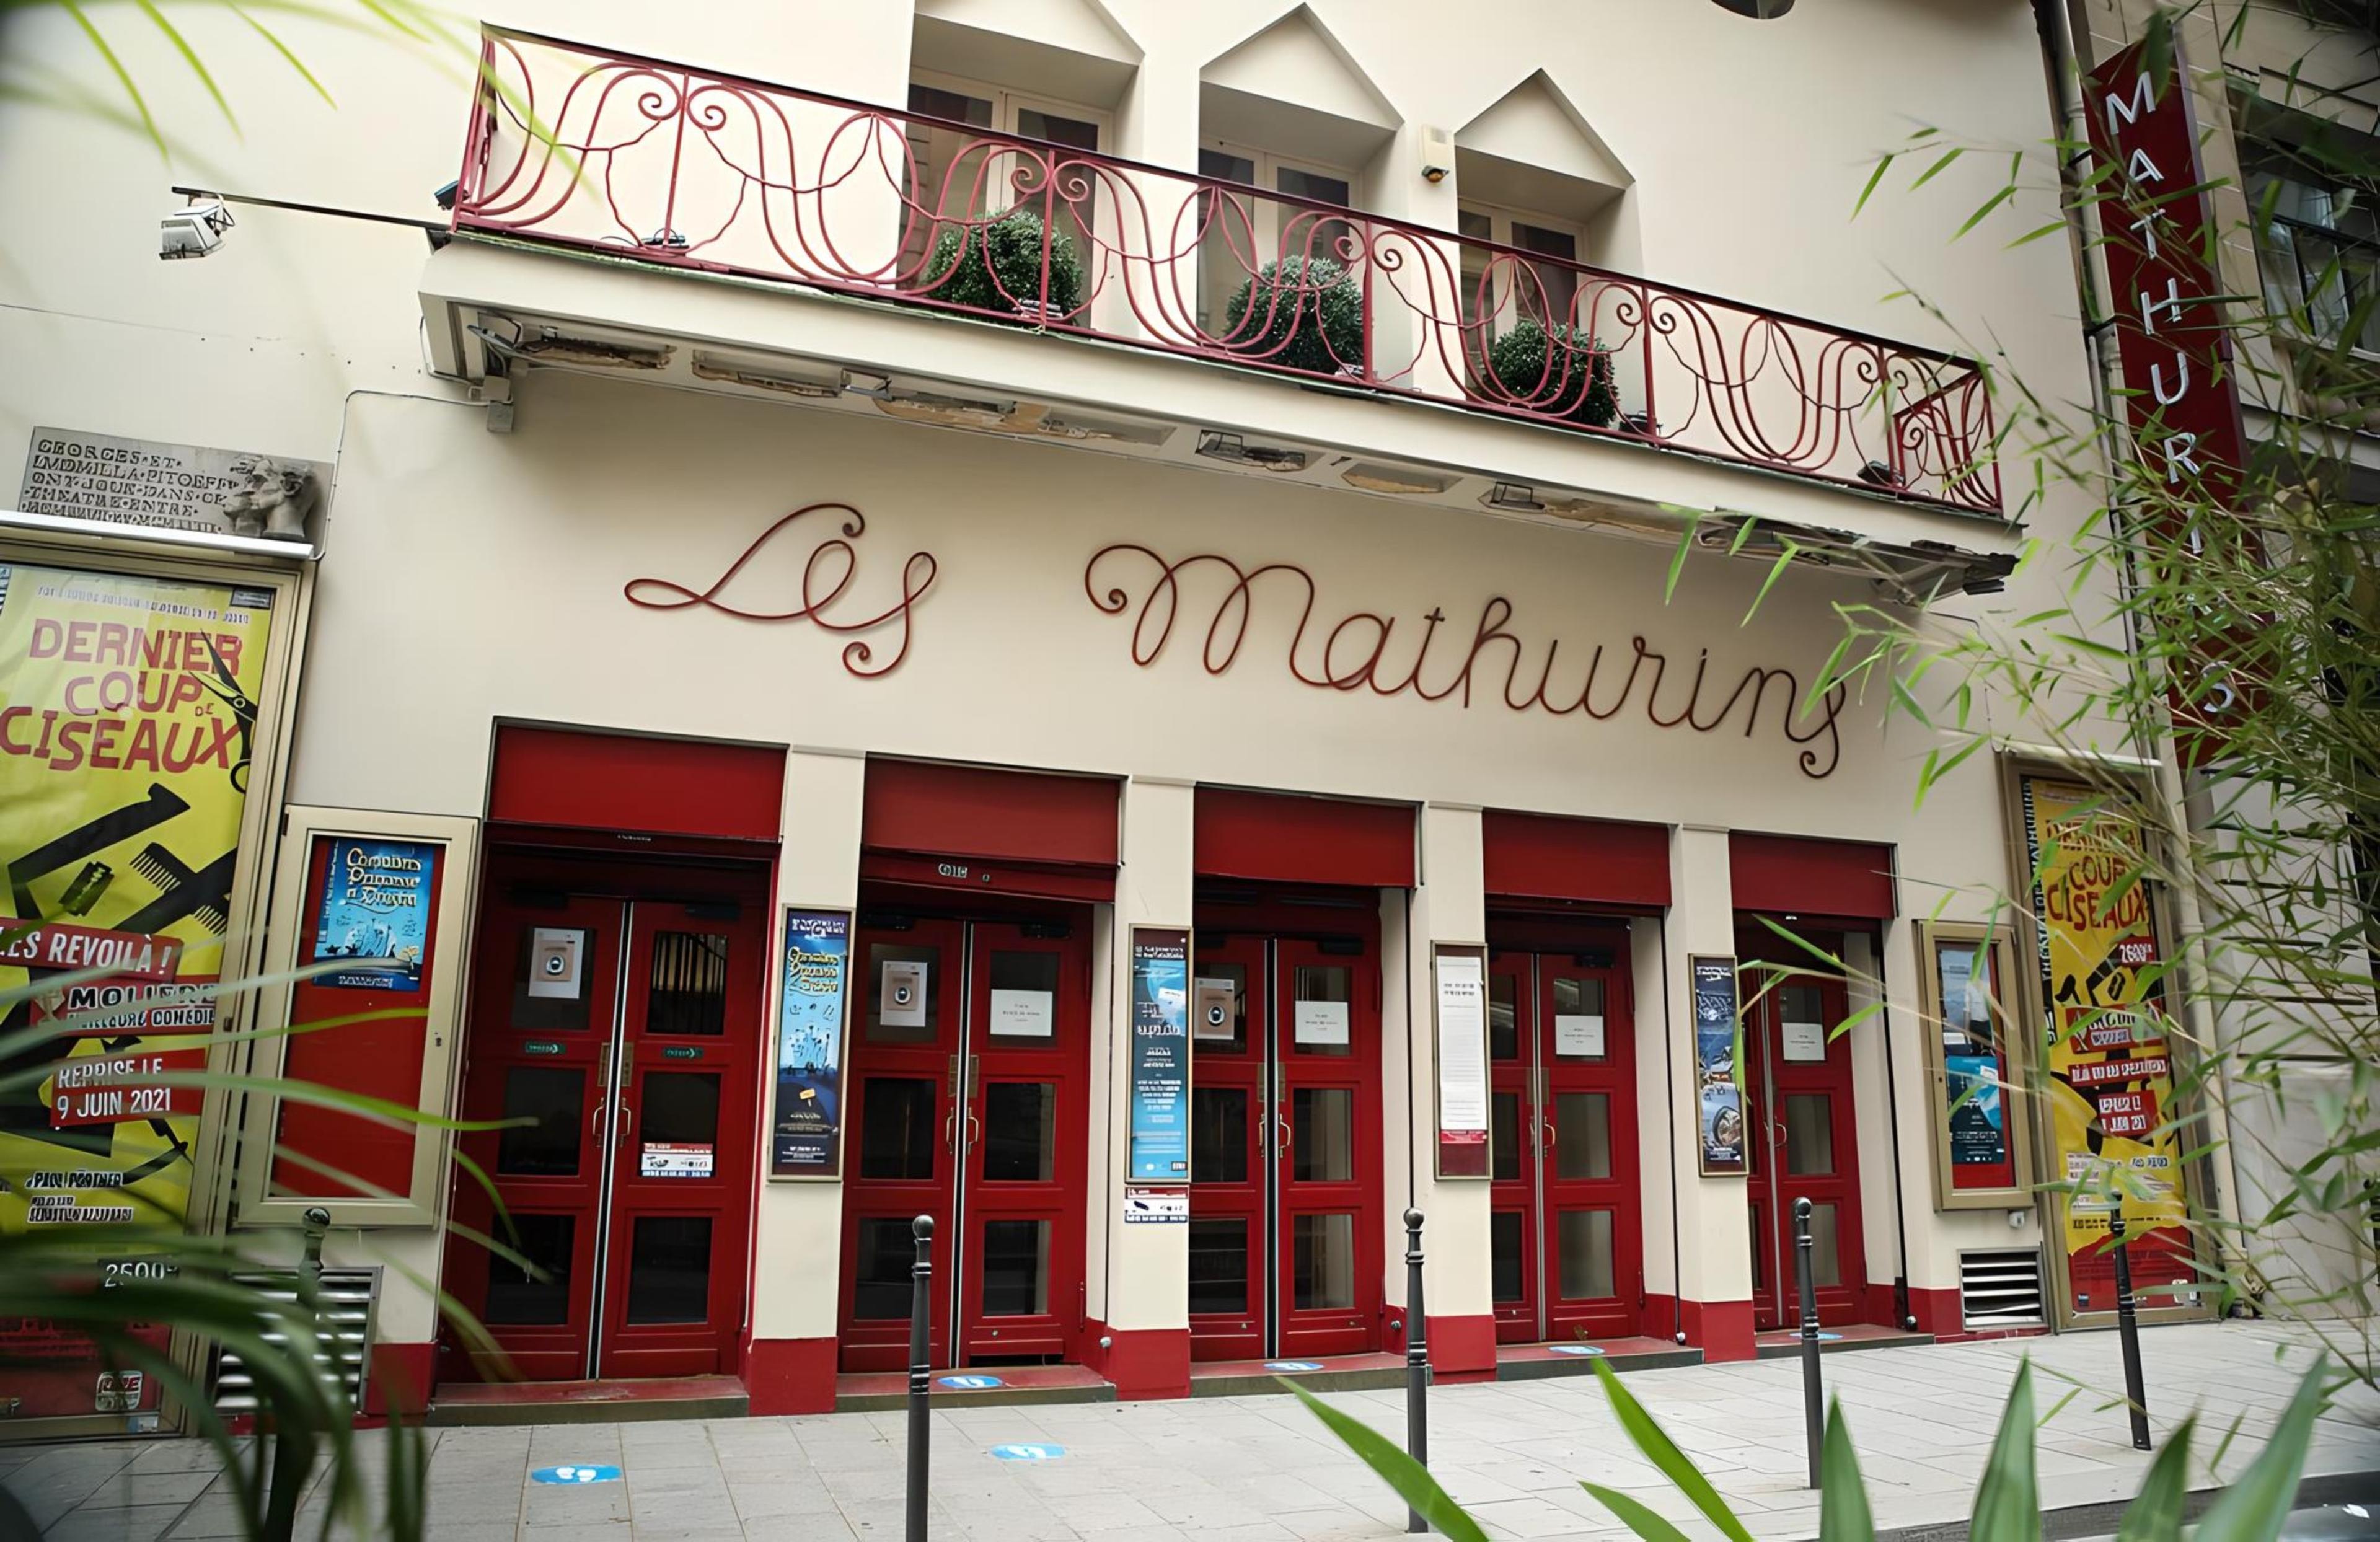 Théâtre des Mathurins